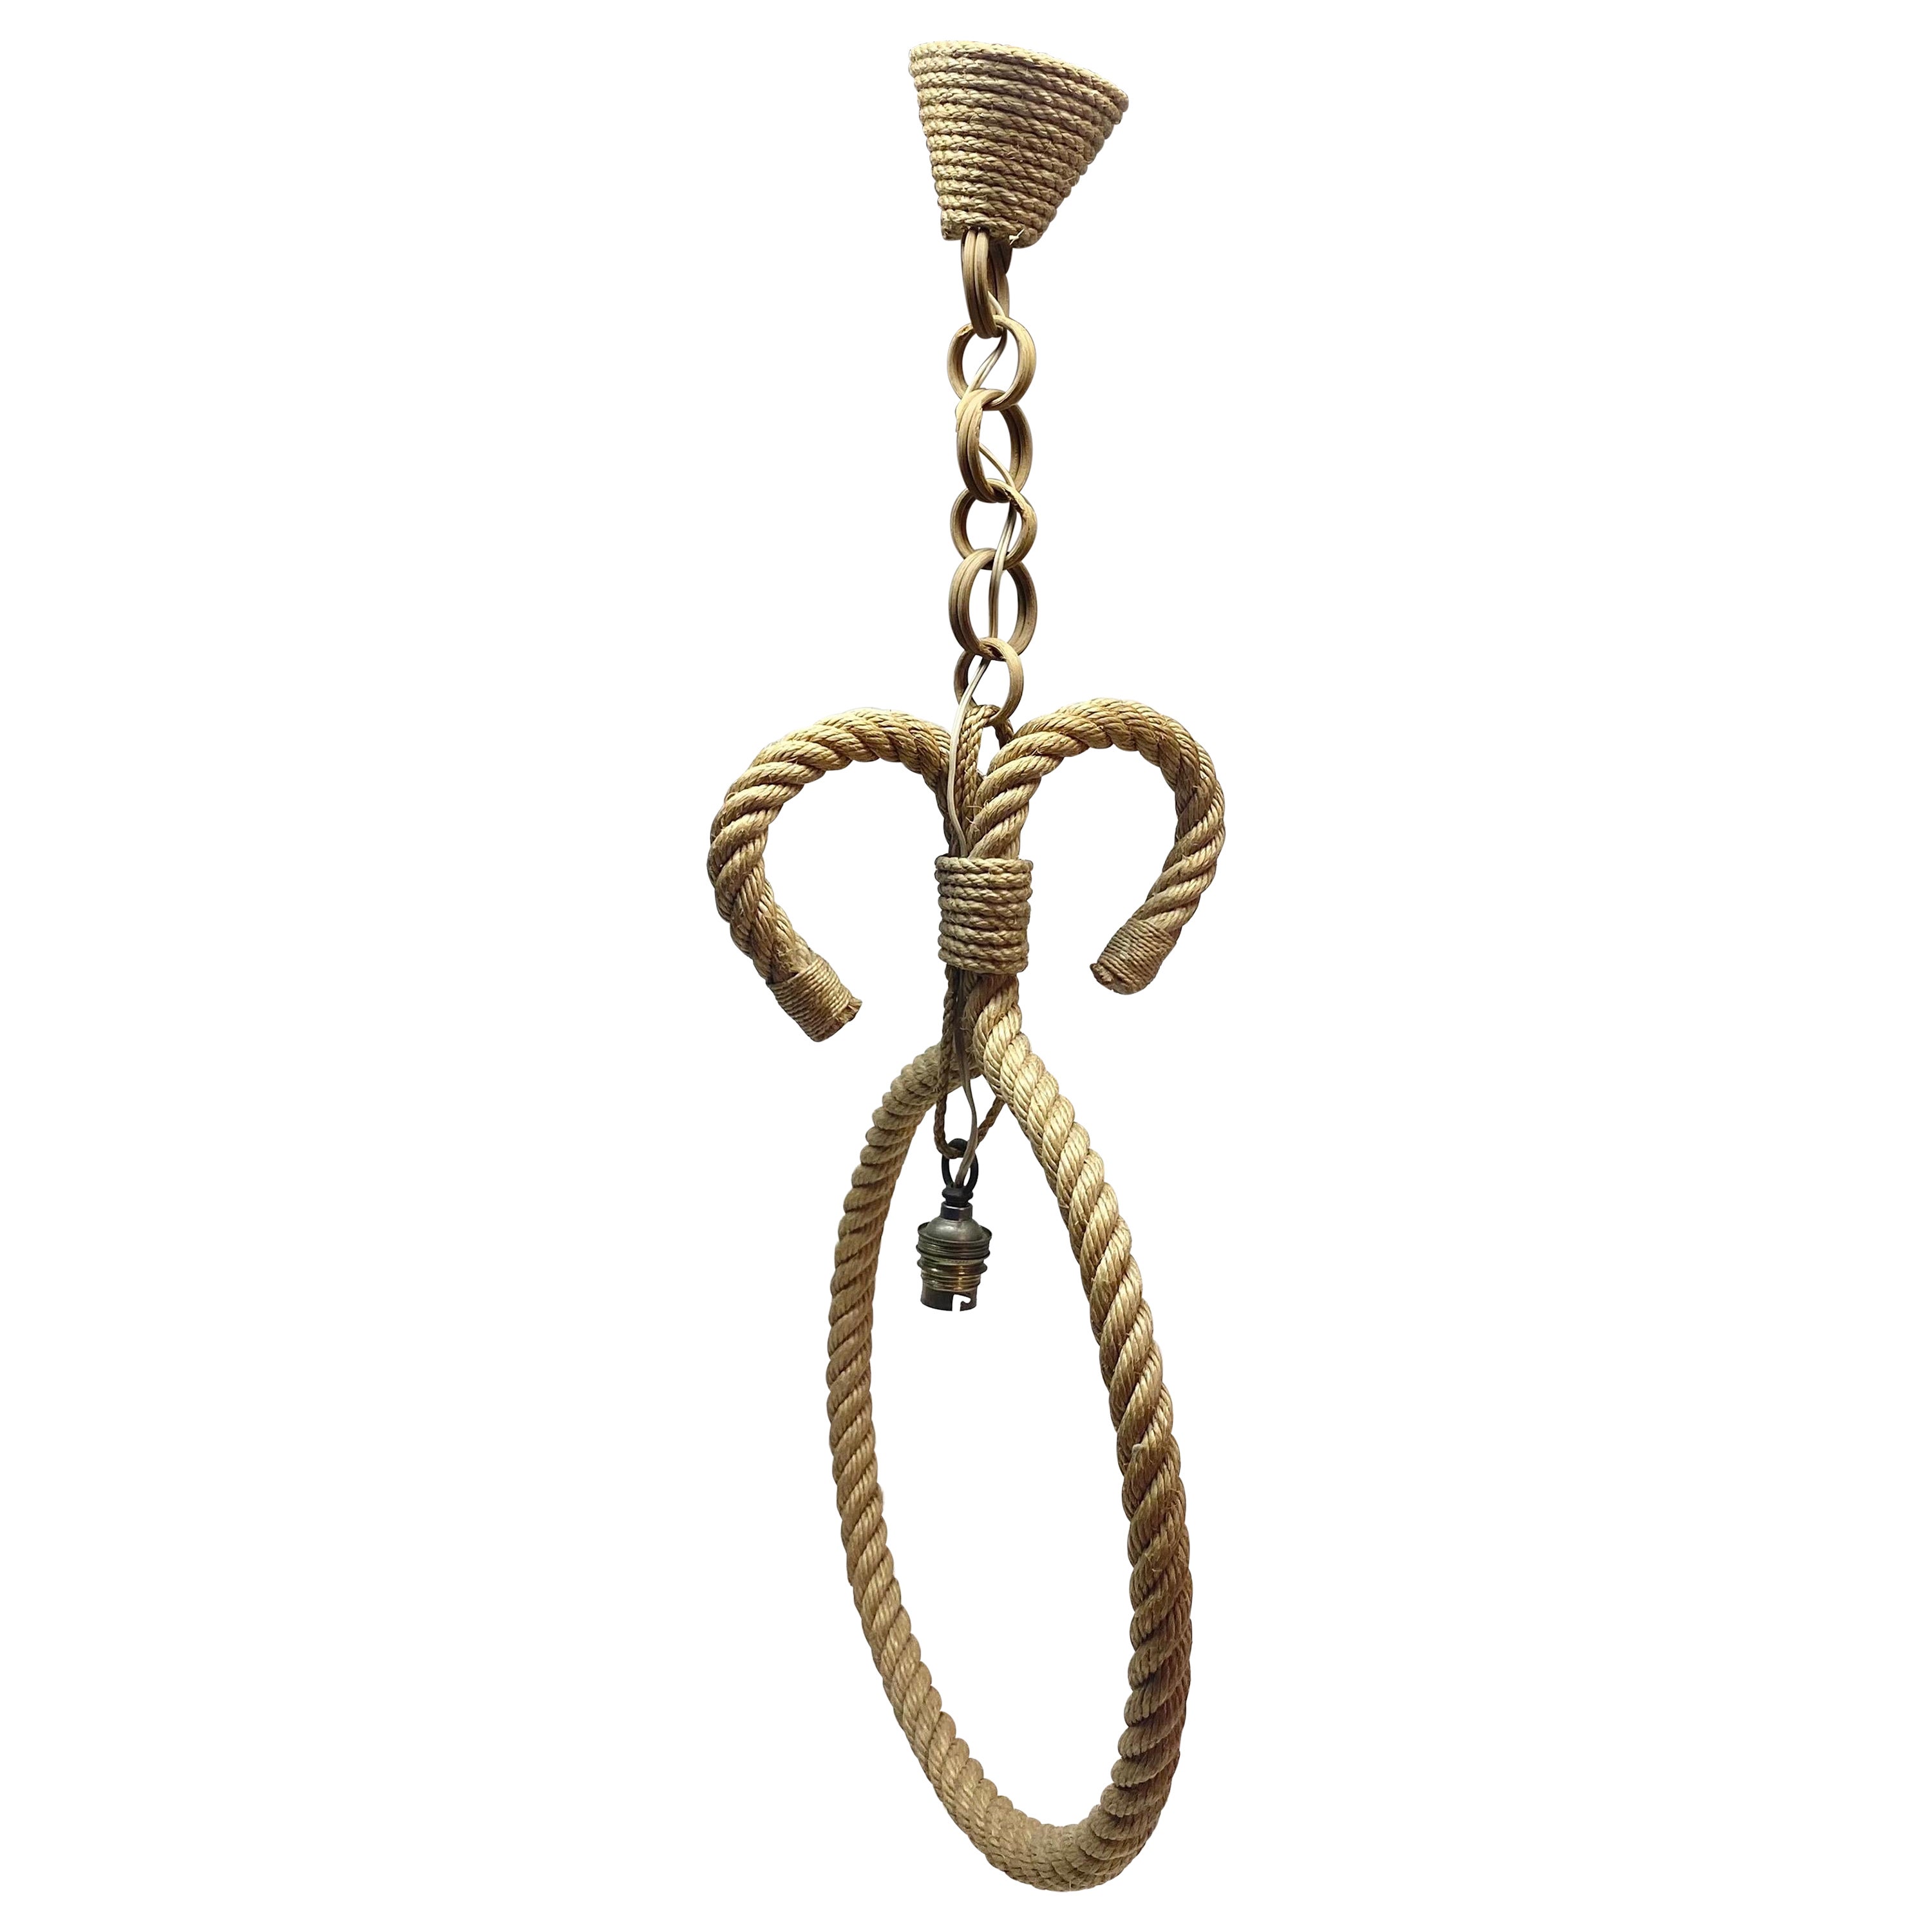 Audoux Minet Rope Pendant For Sale